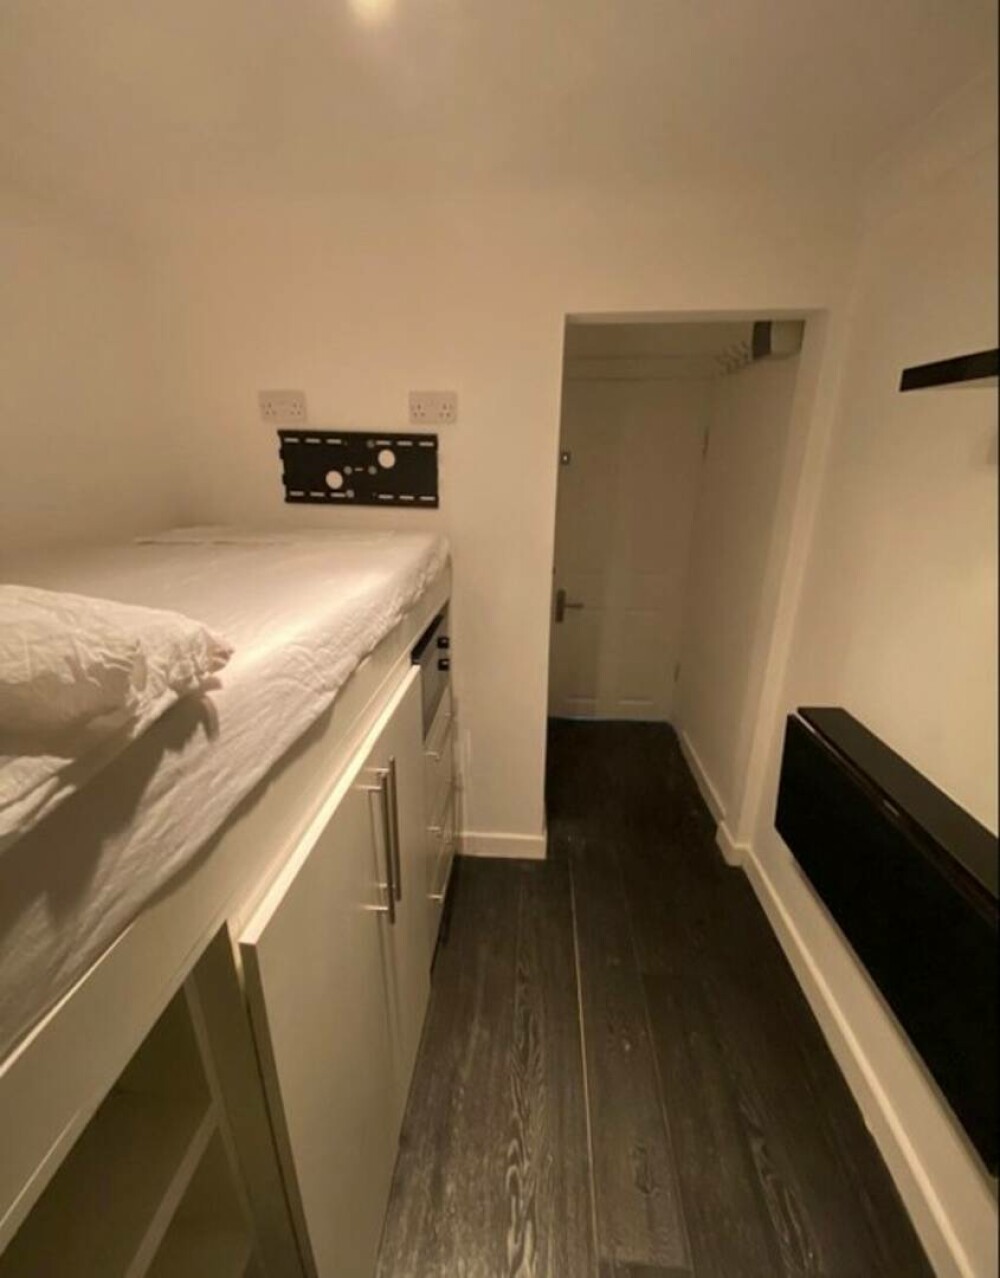 Cel mai mic apartament din Londra a fost scos la vânzare pentru 50.000 de lire. Cum arată locuința de 7 mp GALERIE FOTO - Imaginea 2